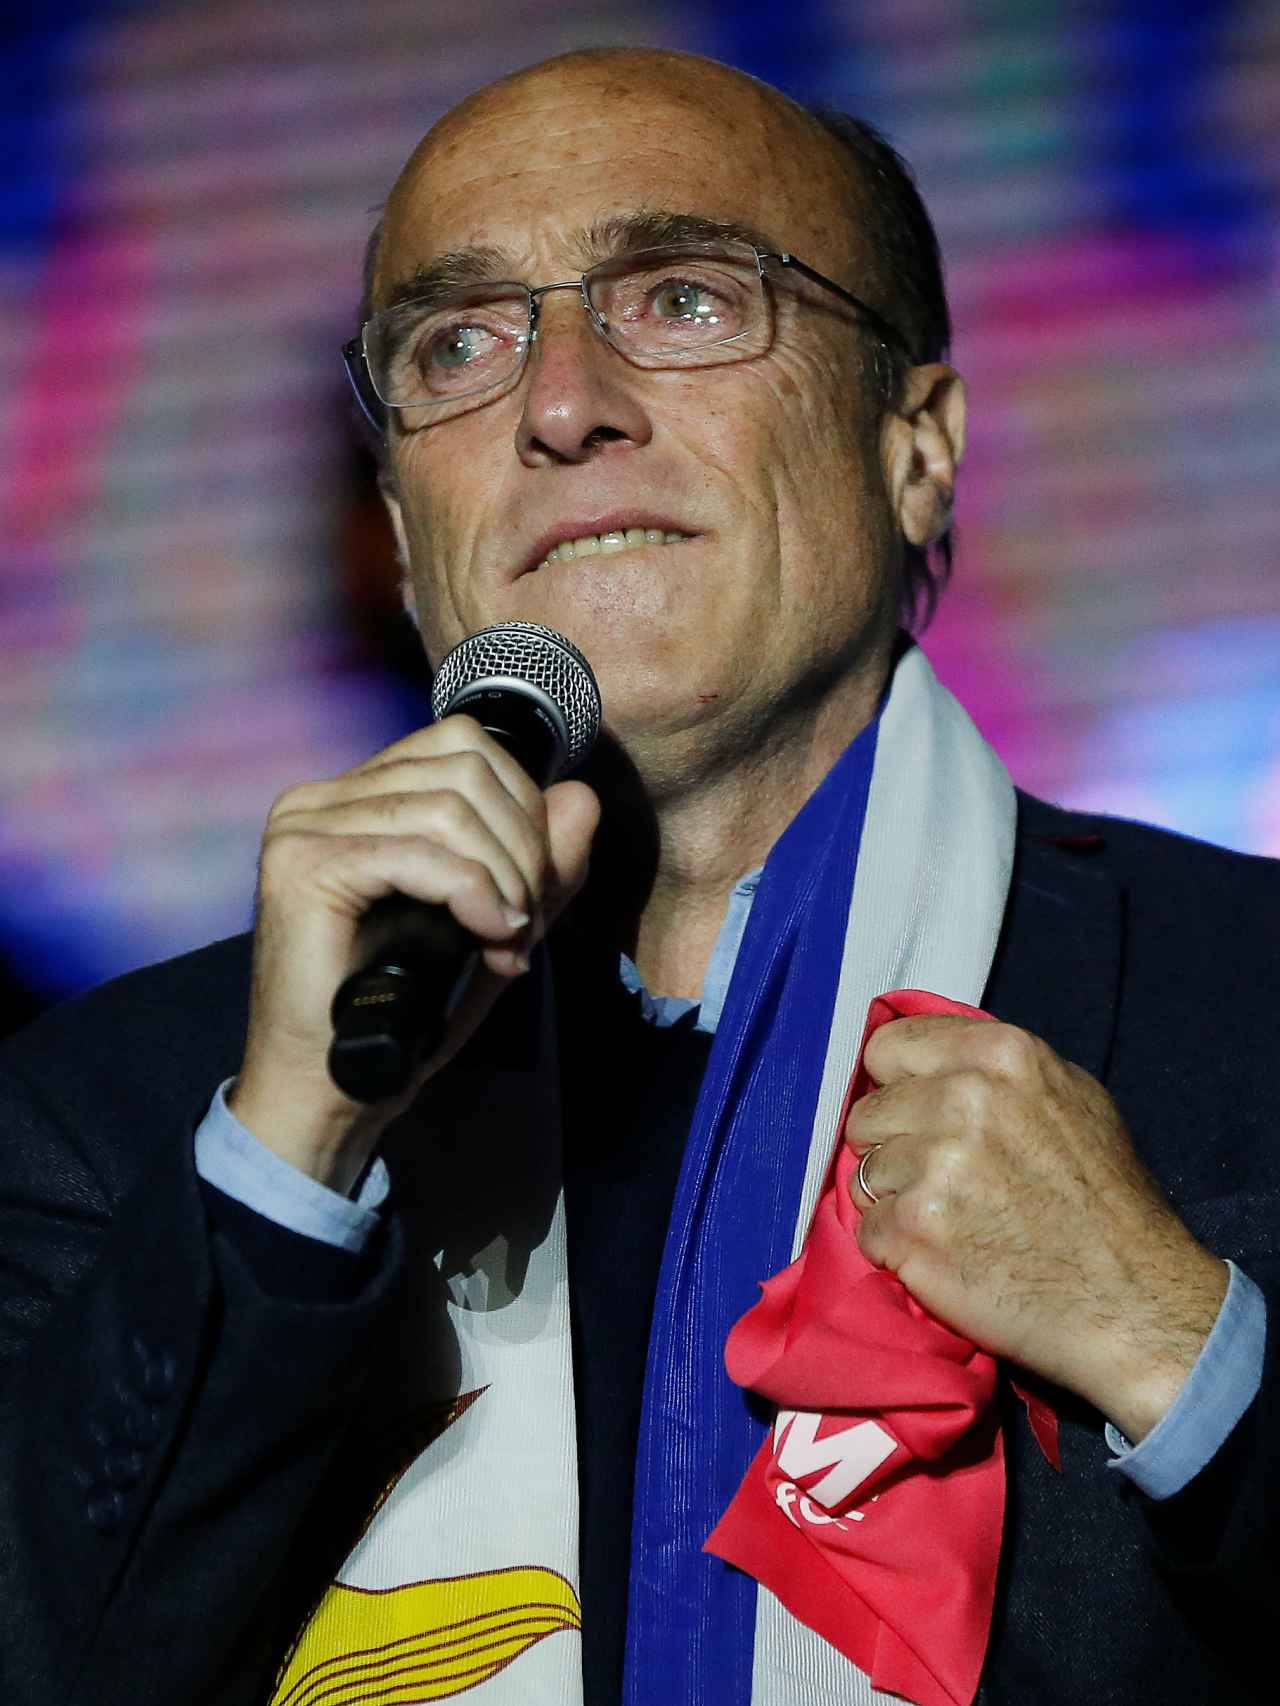 El candidato presidencial uruguayo Daniel Martínez, del Frente Amplio.